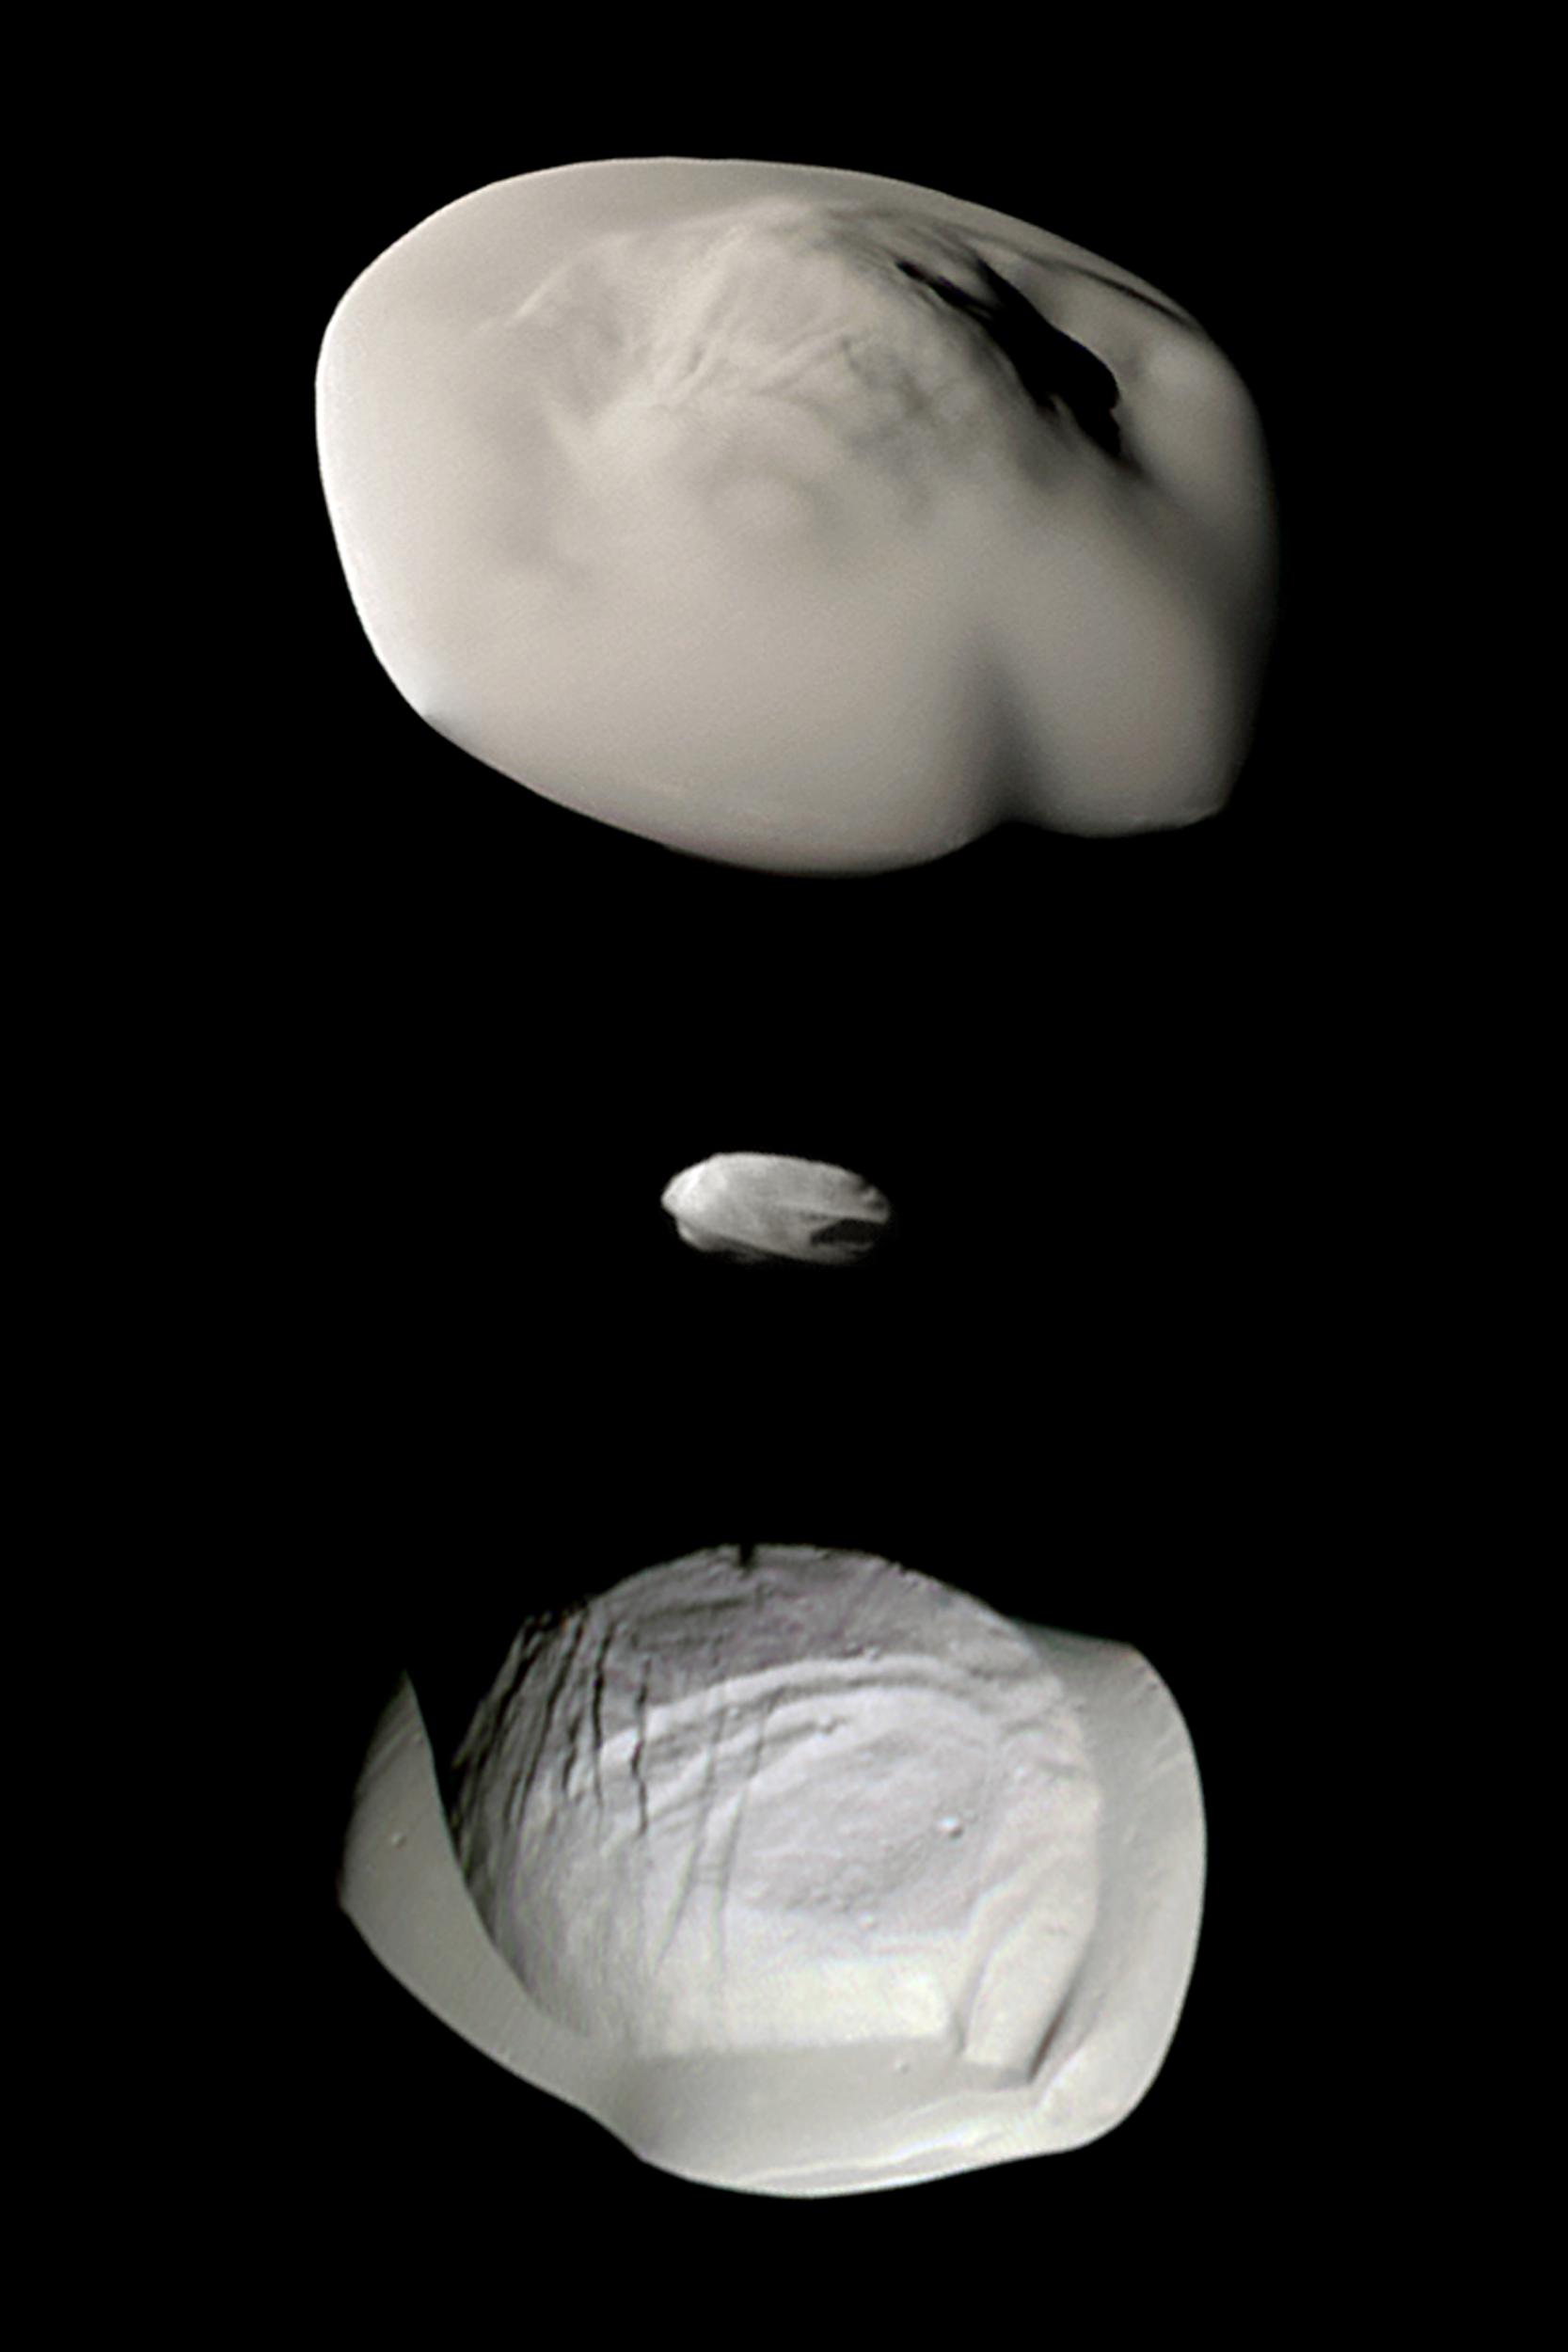 Petites merveilles autour de Saturne